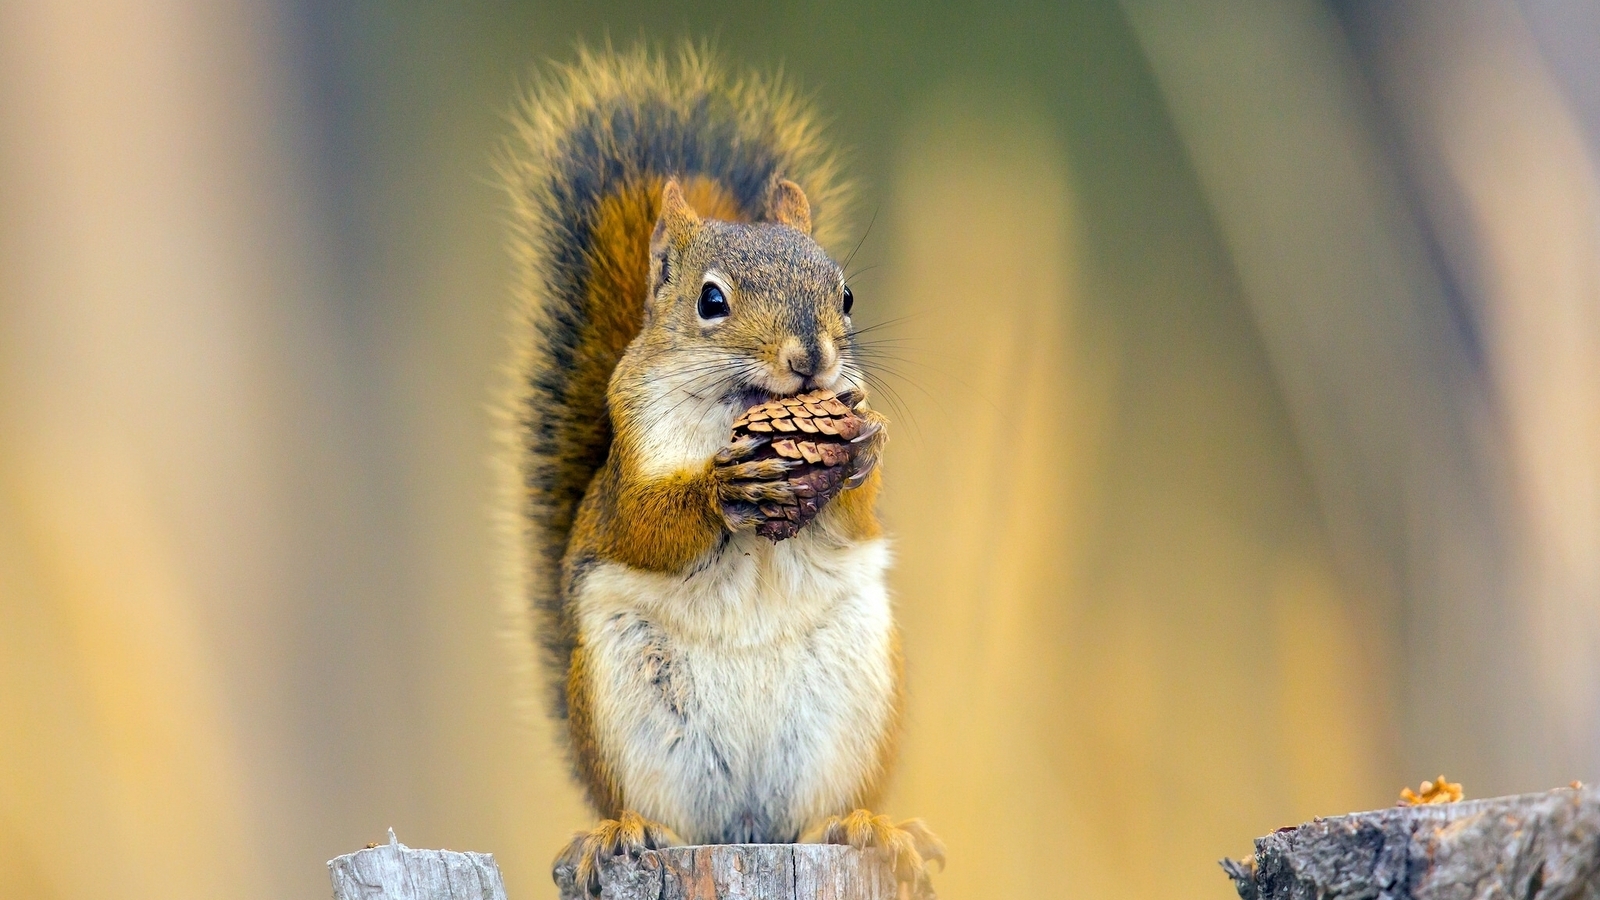 Image: Squirrel, hemp, sitting, shot, keeps biting